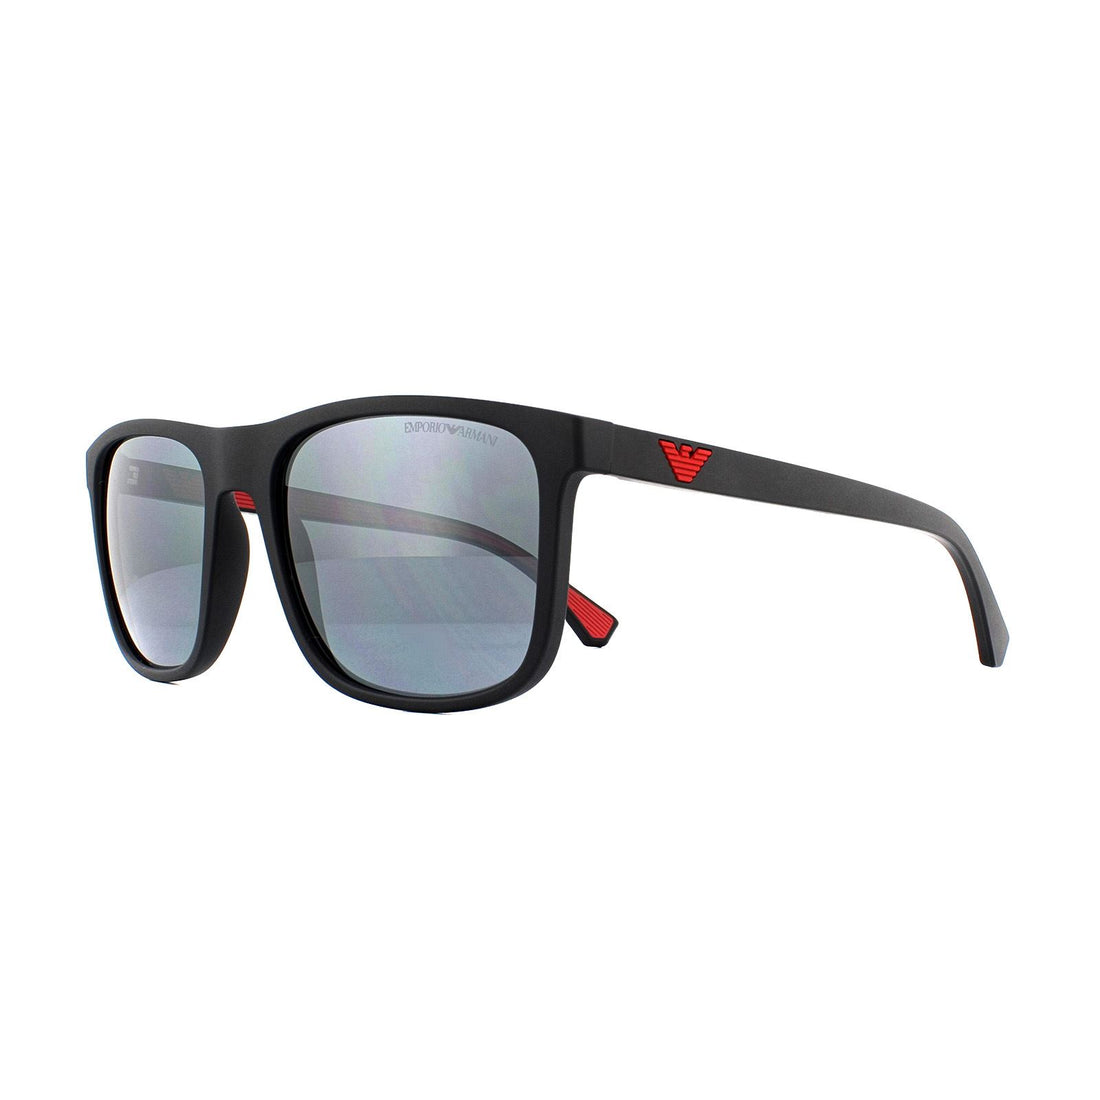 Emporio Armani Sunglasses 4129 50016G Matte Black Light Grey Mirror Black